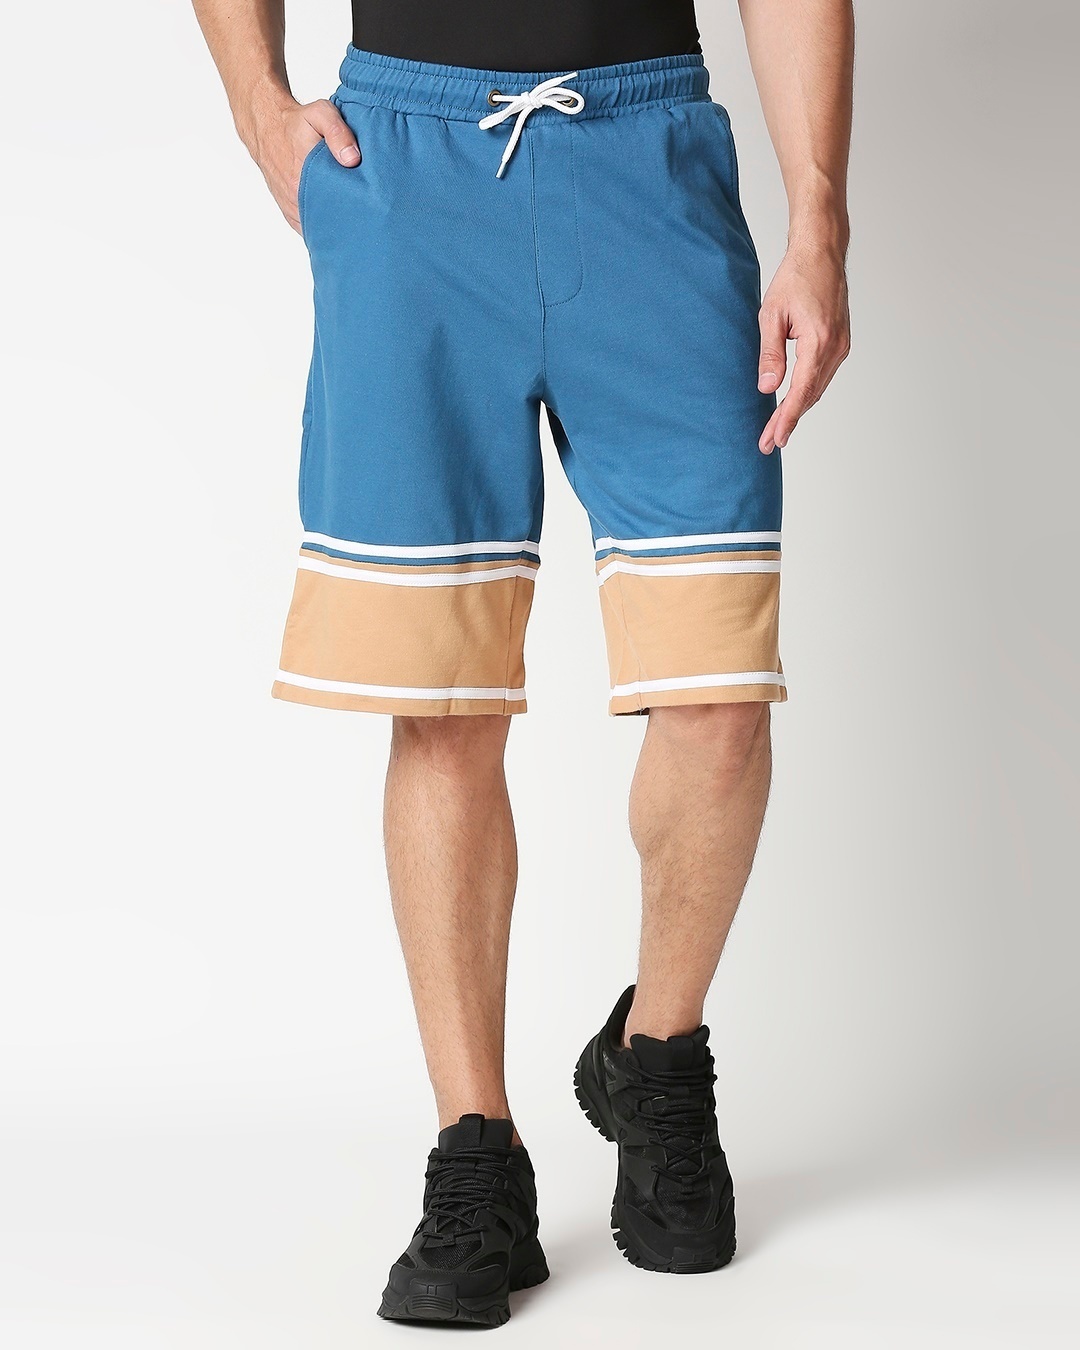 Buy Digital Teal Men's Terry Color Block Shorts for Men blue Online at ...